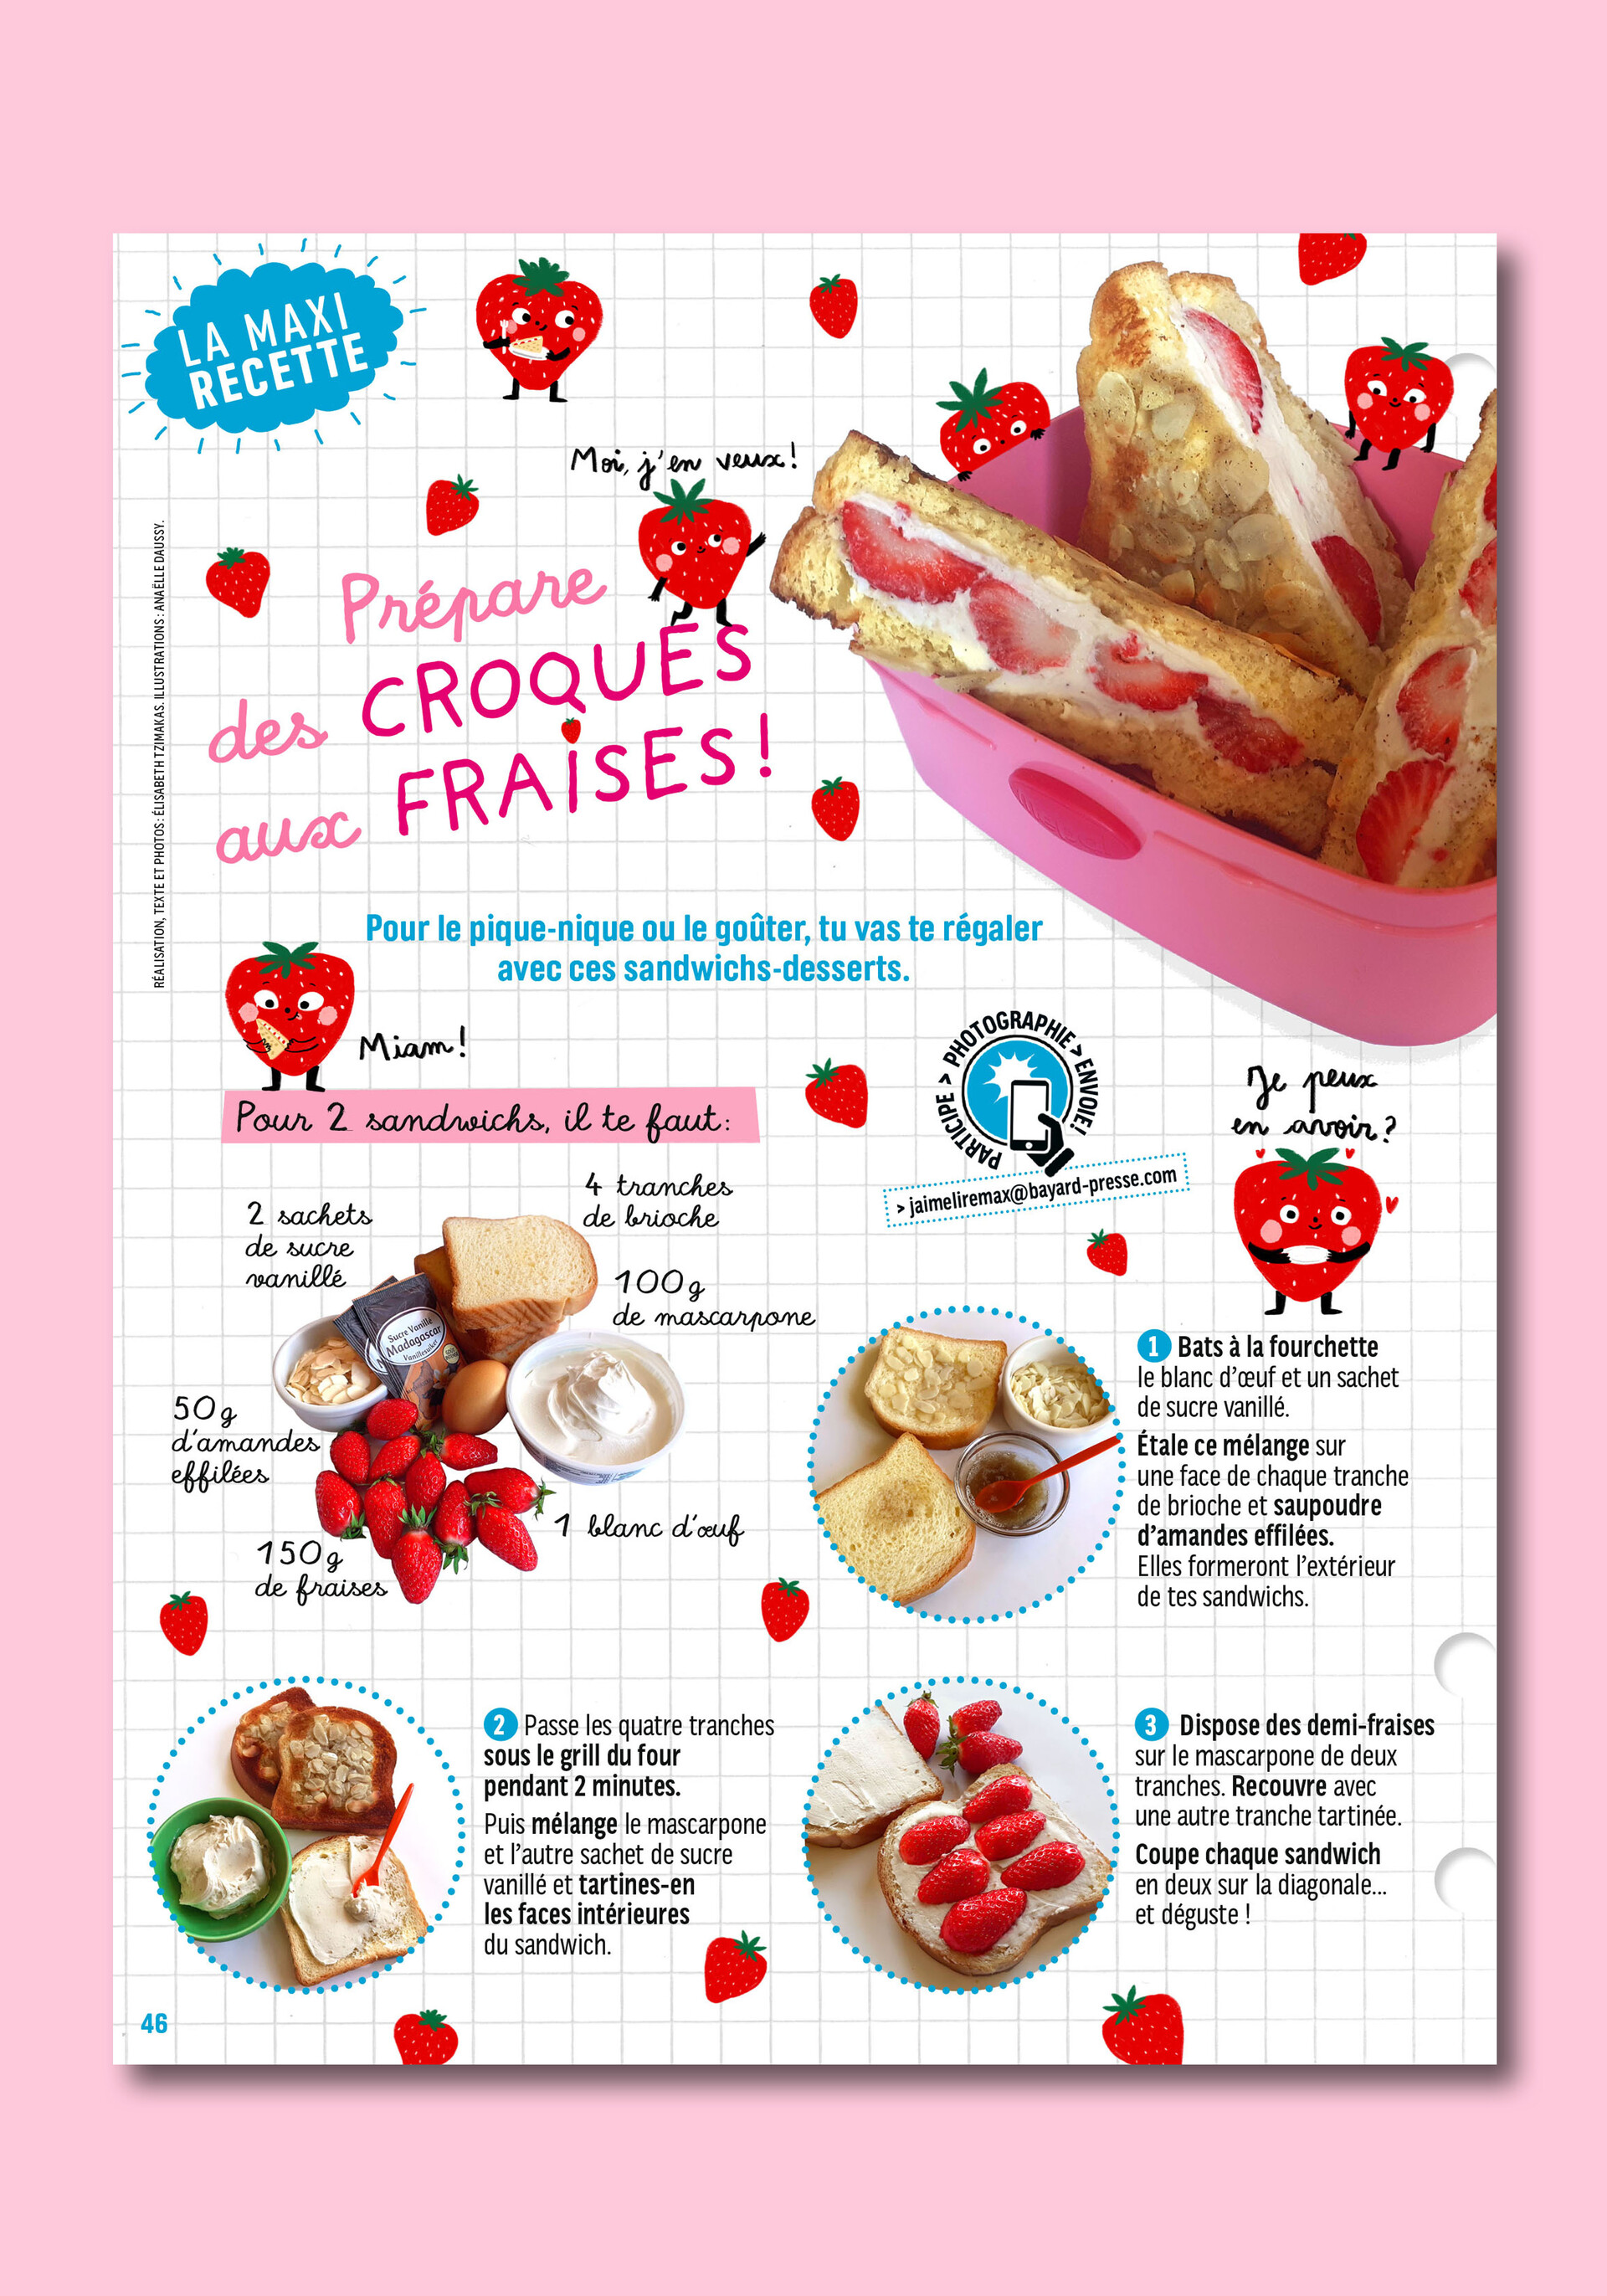 ArtStation - J'aime Lire Max - Recette des Croques aux fraises